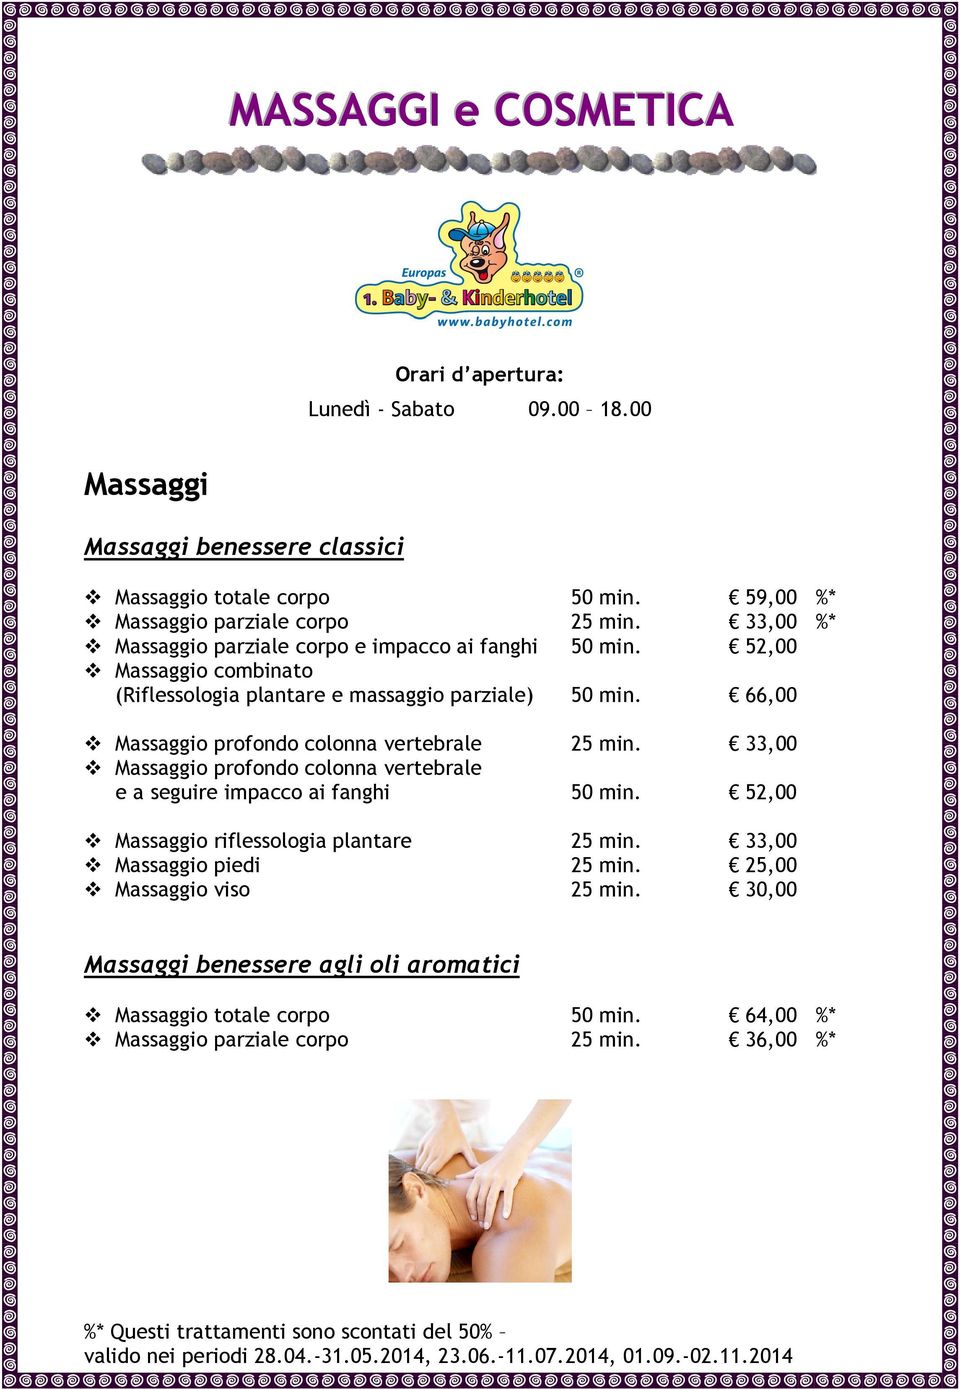 52,00 Massaggio combinato (Riflessologia plantare e massaggio parziale) 50 min. 66,00 Massaggio profondo colonna vertebrale 25 min.